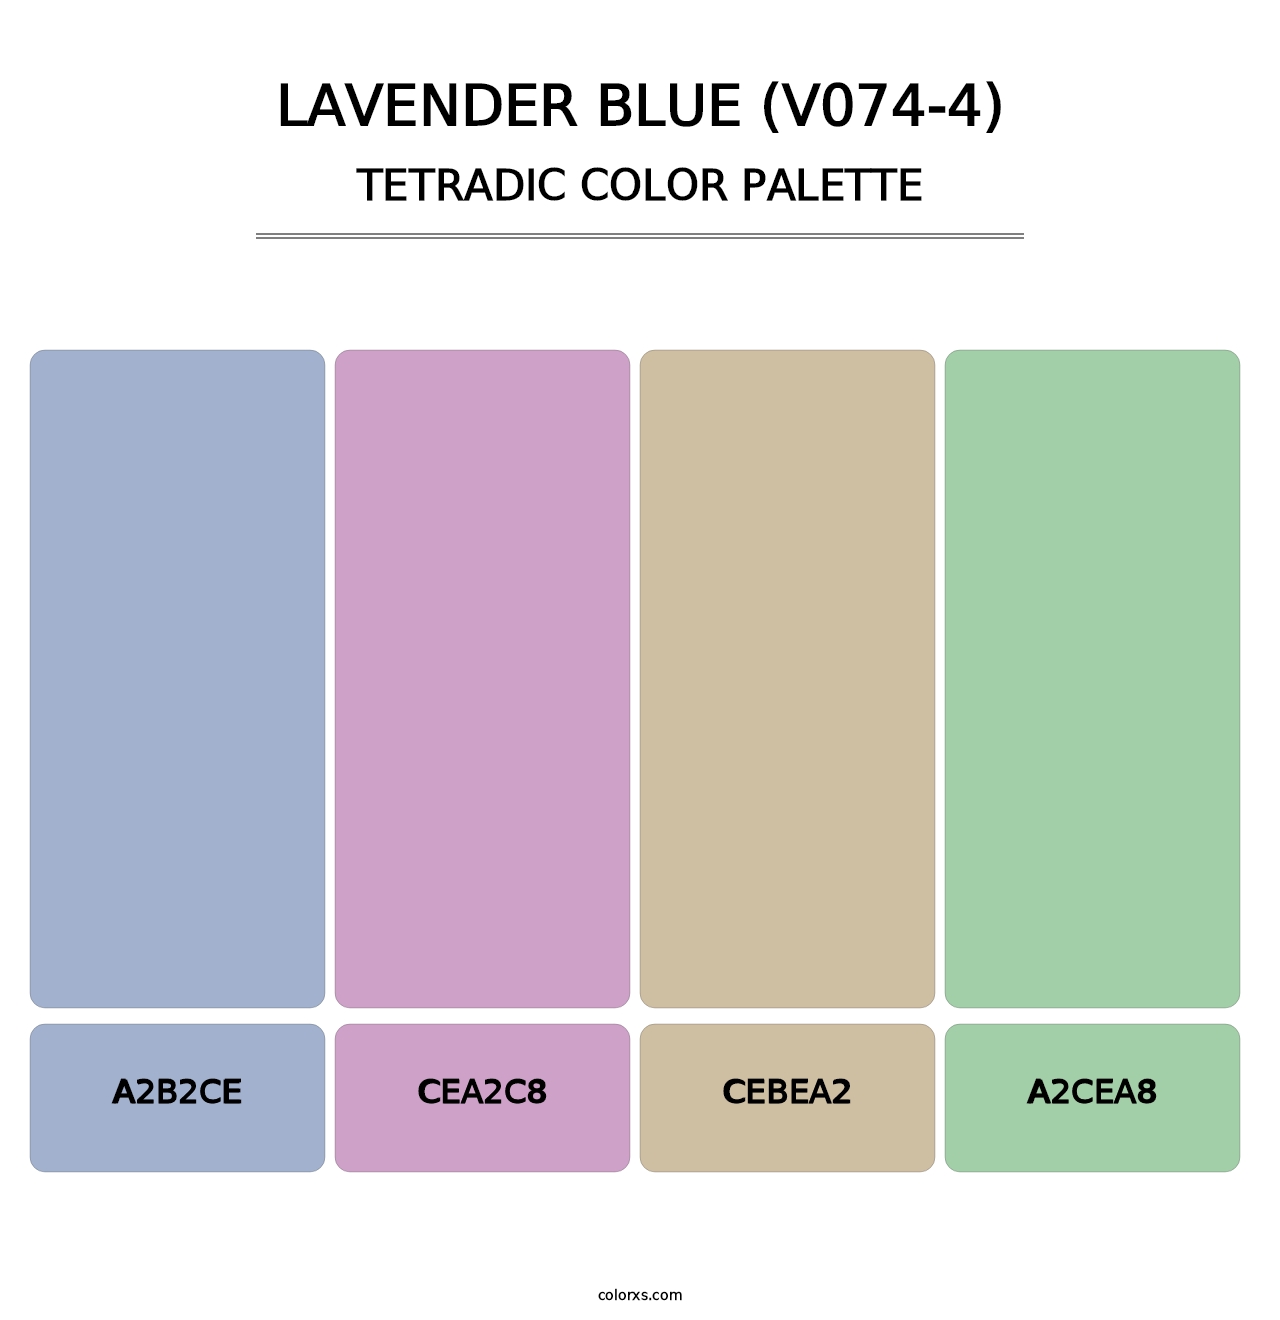 Lavender Blue (V074-4) - Tetradic Color Palette